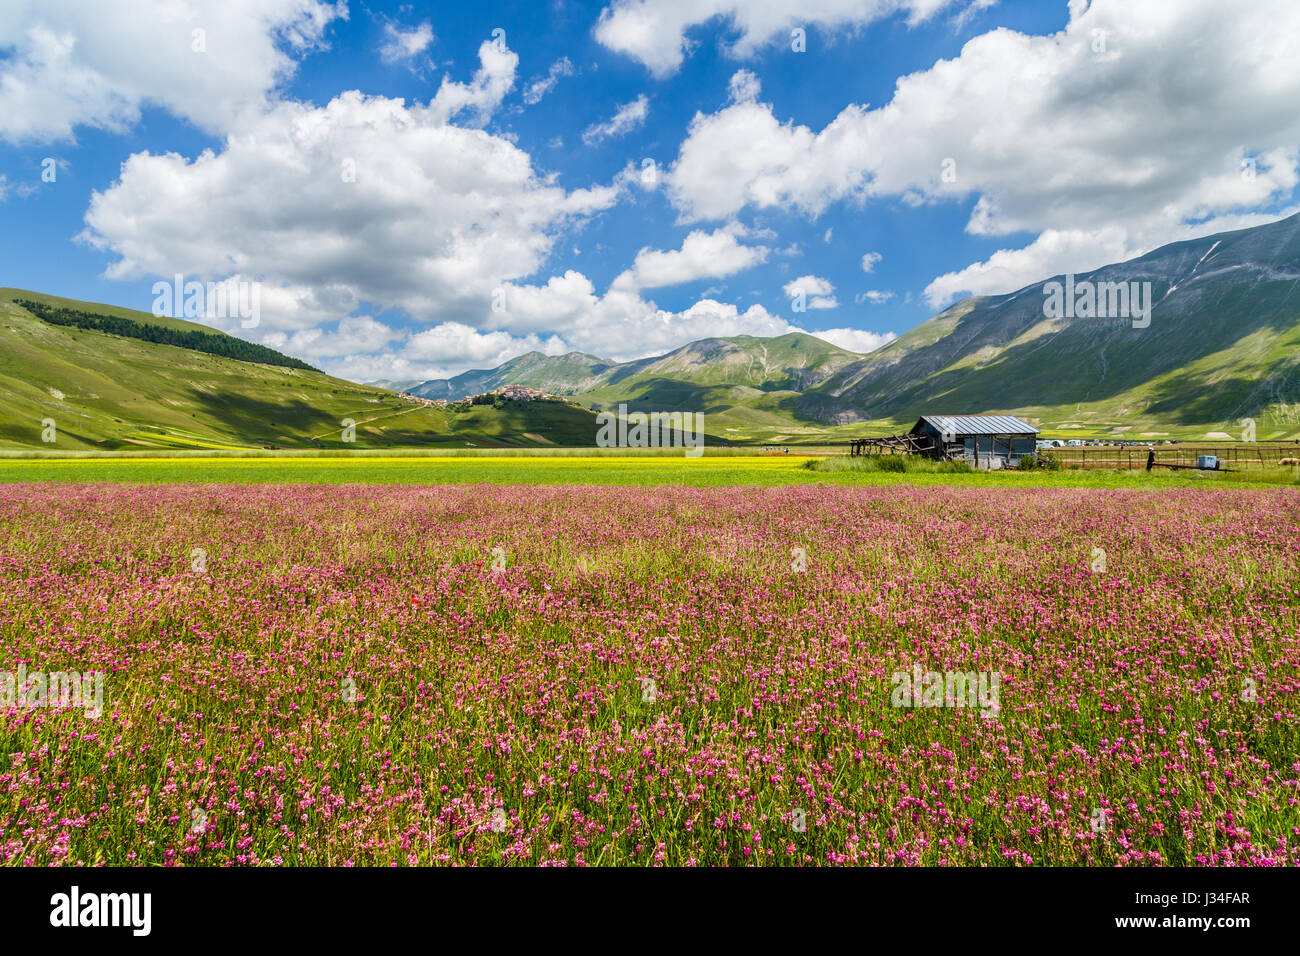 Beau paysage d'été à Piano Grande (Grande Plaine) plateau de montagne dans les Apennins, Castelluccio di Norcia, Ombrie, Italie Banque D'Images